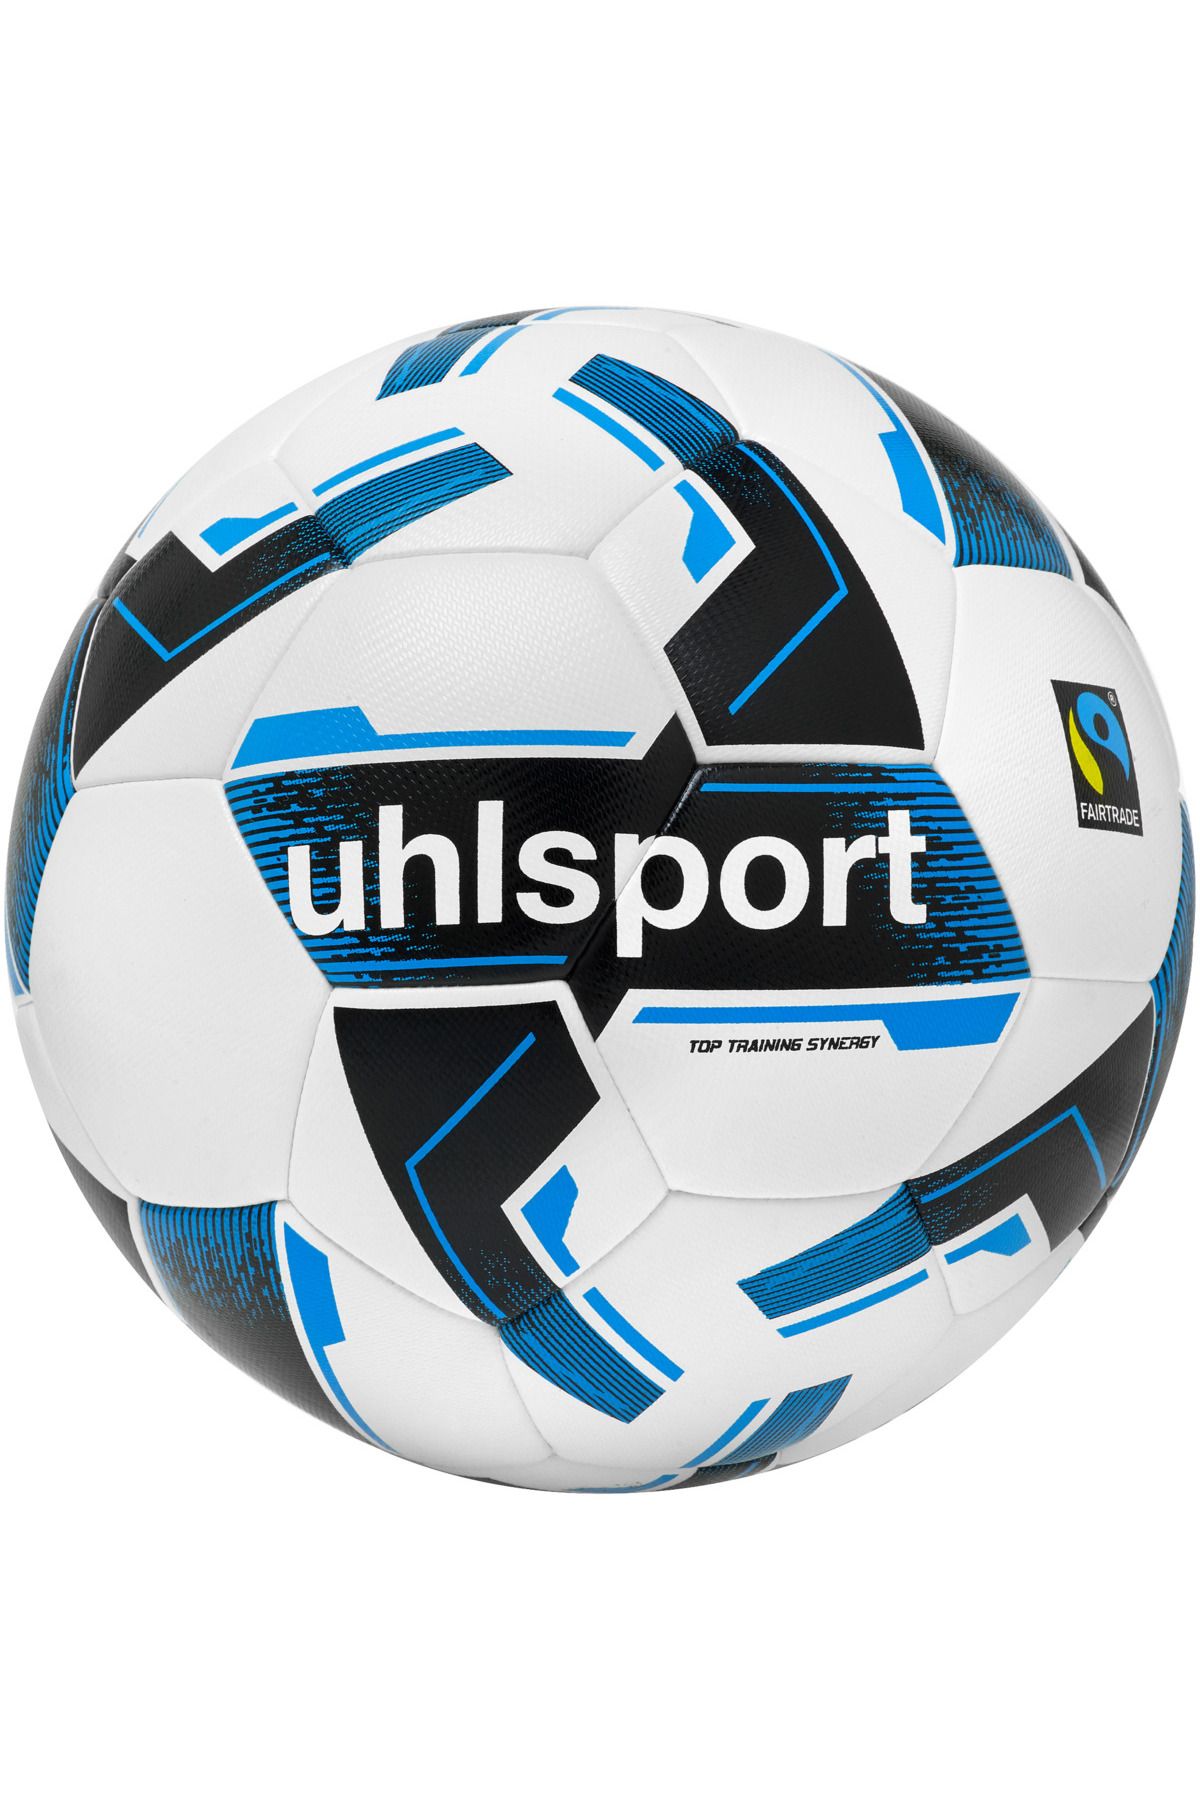 uhlsport Top Training Synergy Fairtrade Futbol Topu No:5